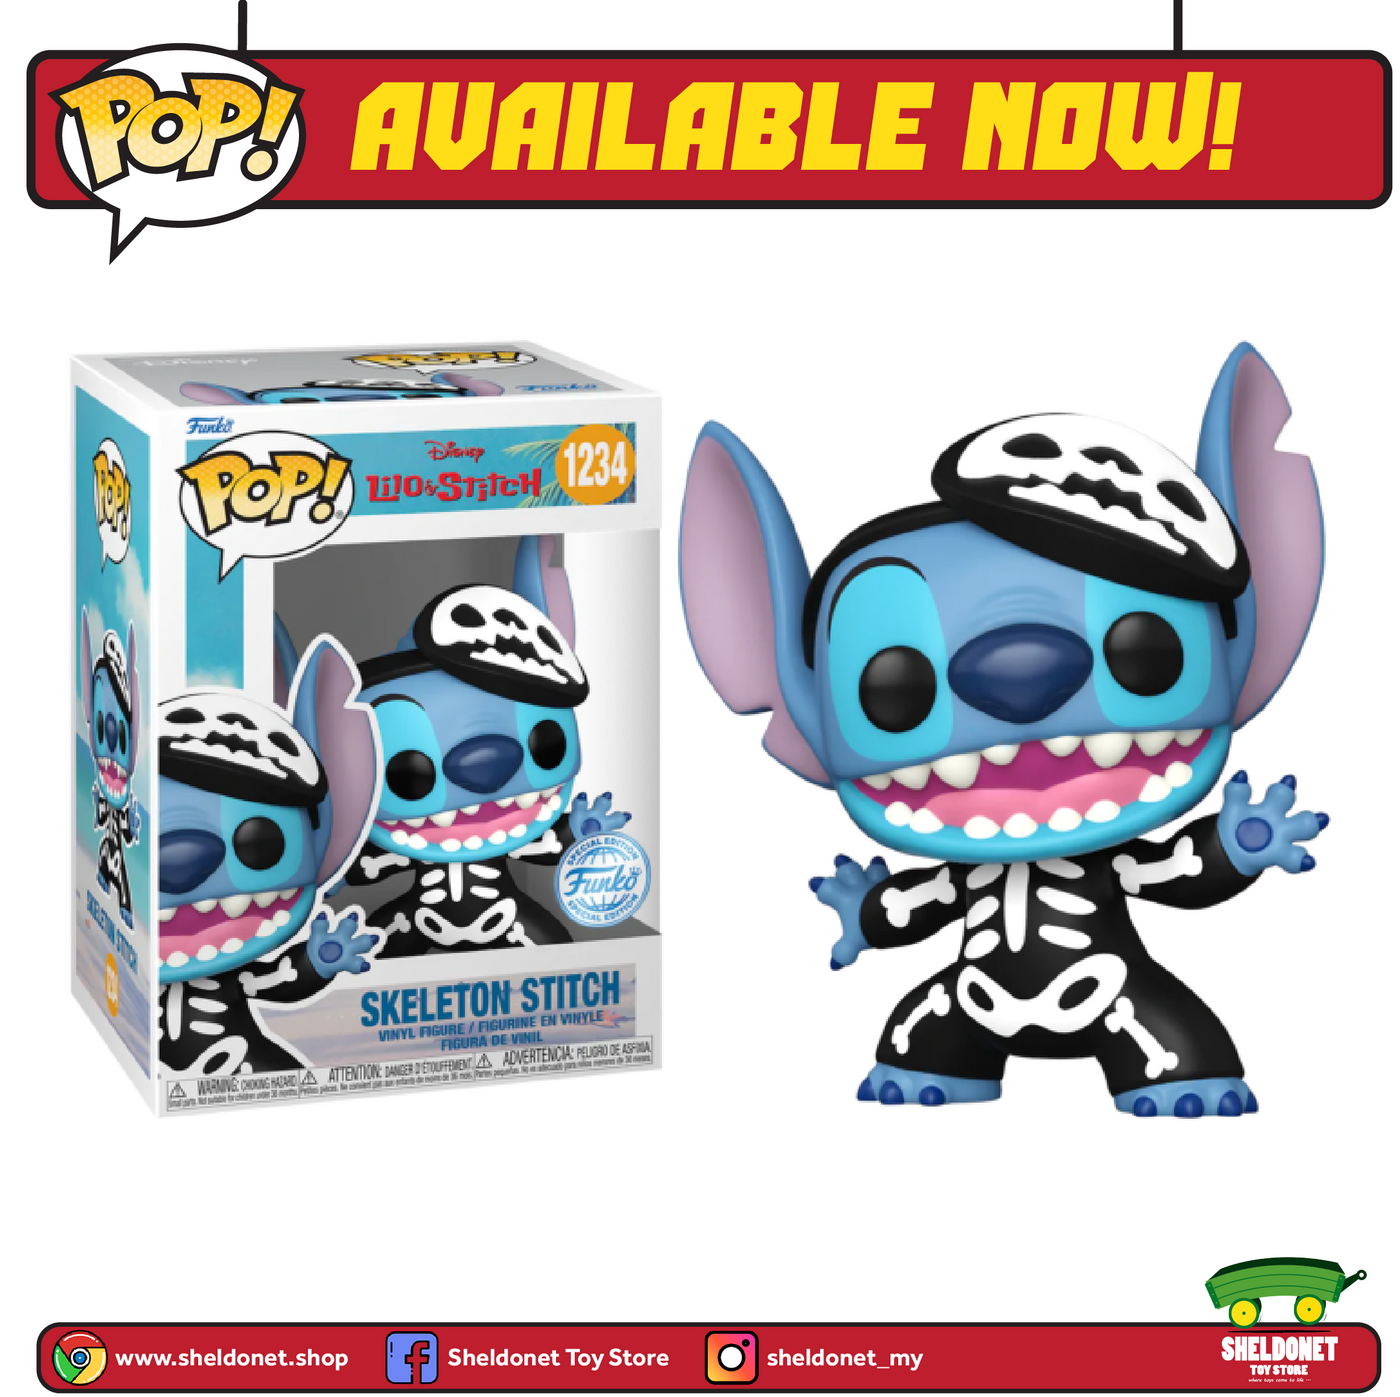 Pop! Disney: Lilo & Stitch - Skeleton Stitch Exclusive